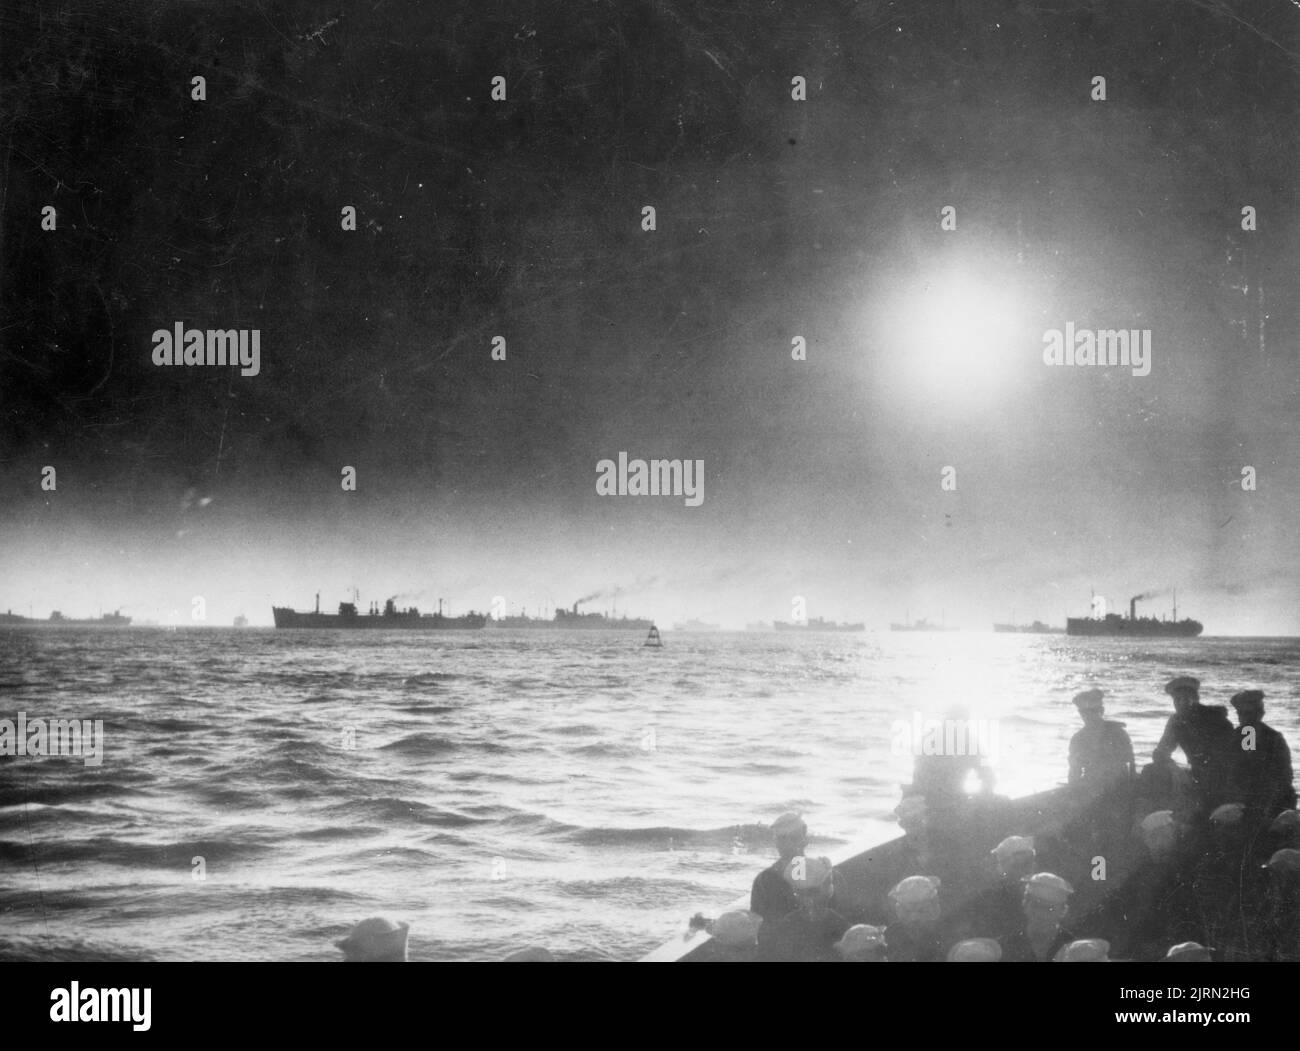 Ein Vintage-Foto um 1942, das einen Konvoi von Handelsschiffen zeigt, die während des Zweiten Weltkriegs den Atlantik überquerten Stockfoto